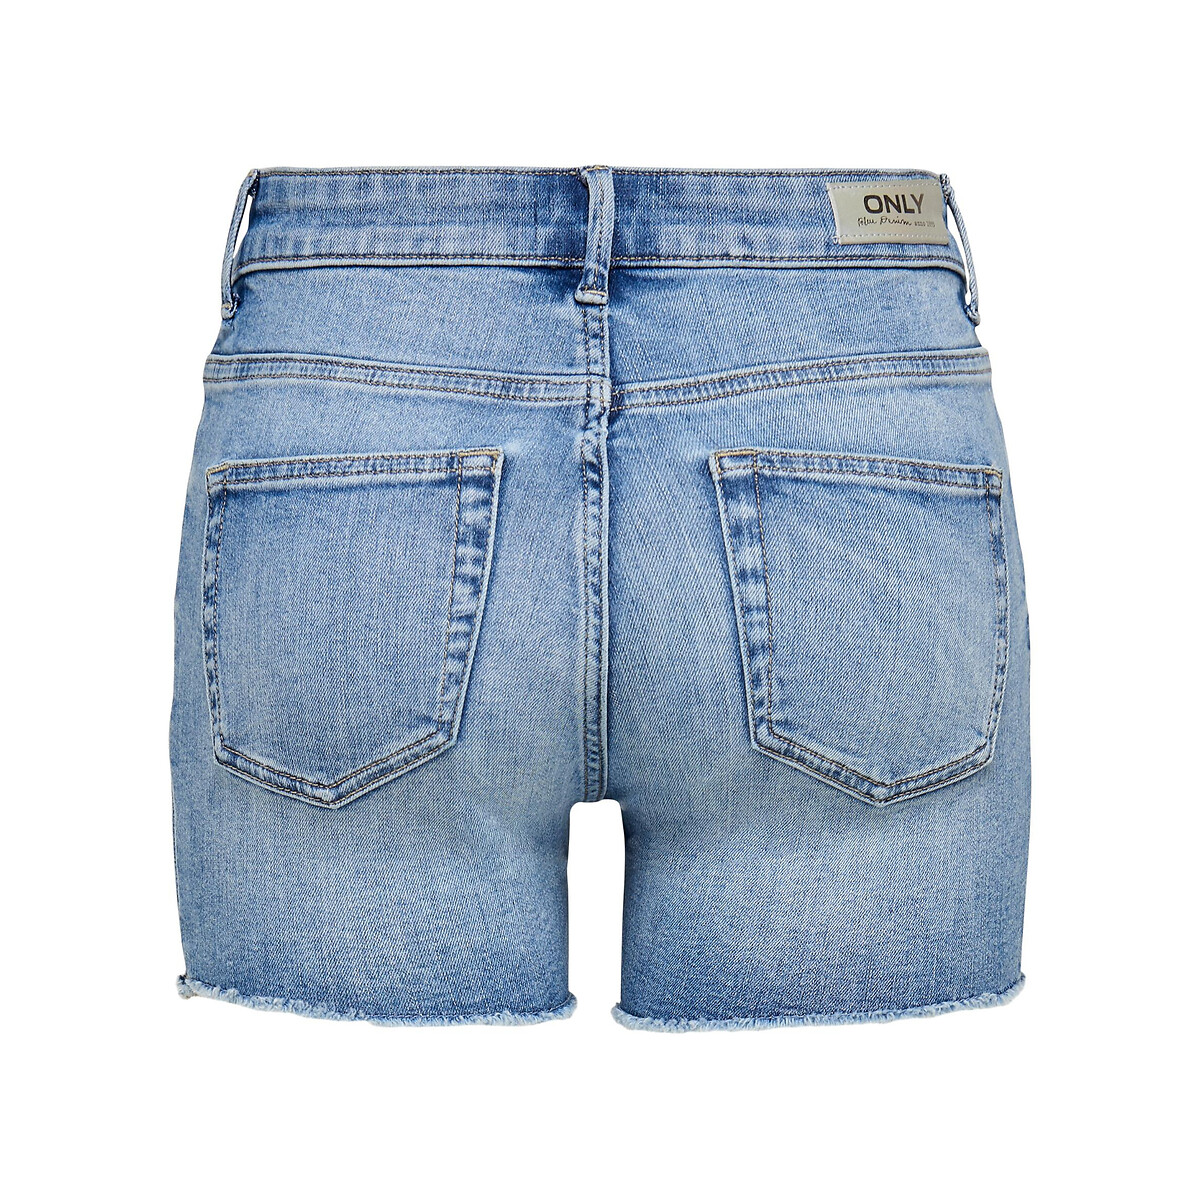 Шорты Из джинсовой ткани M синий LaRedoute, размер M - фото 5